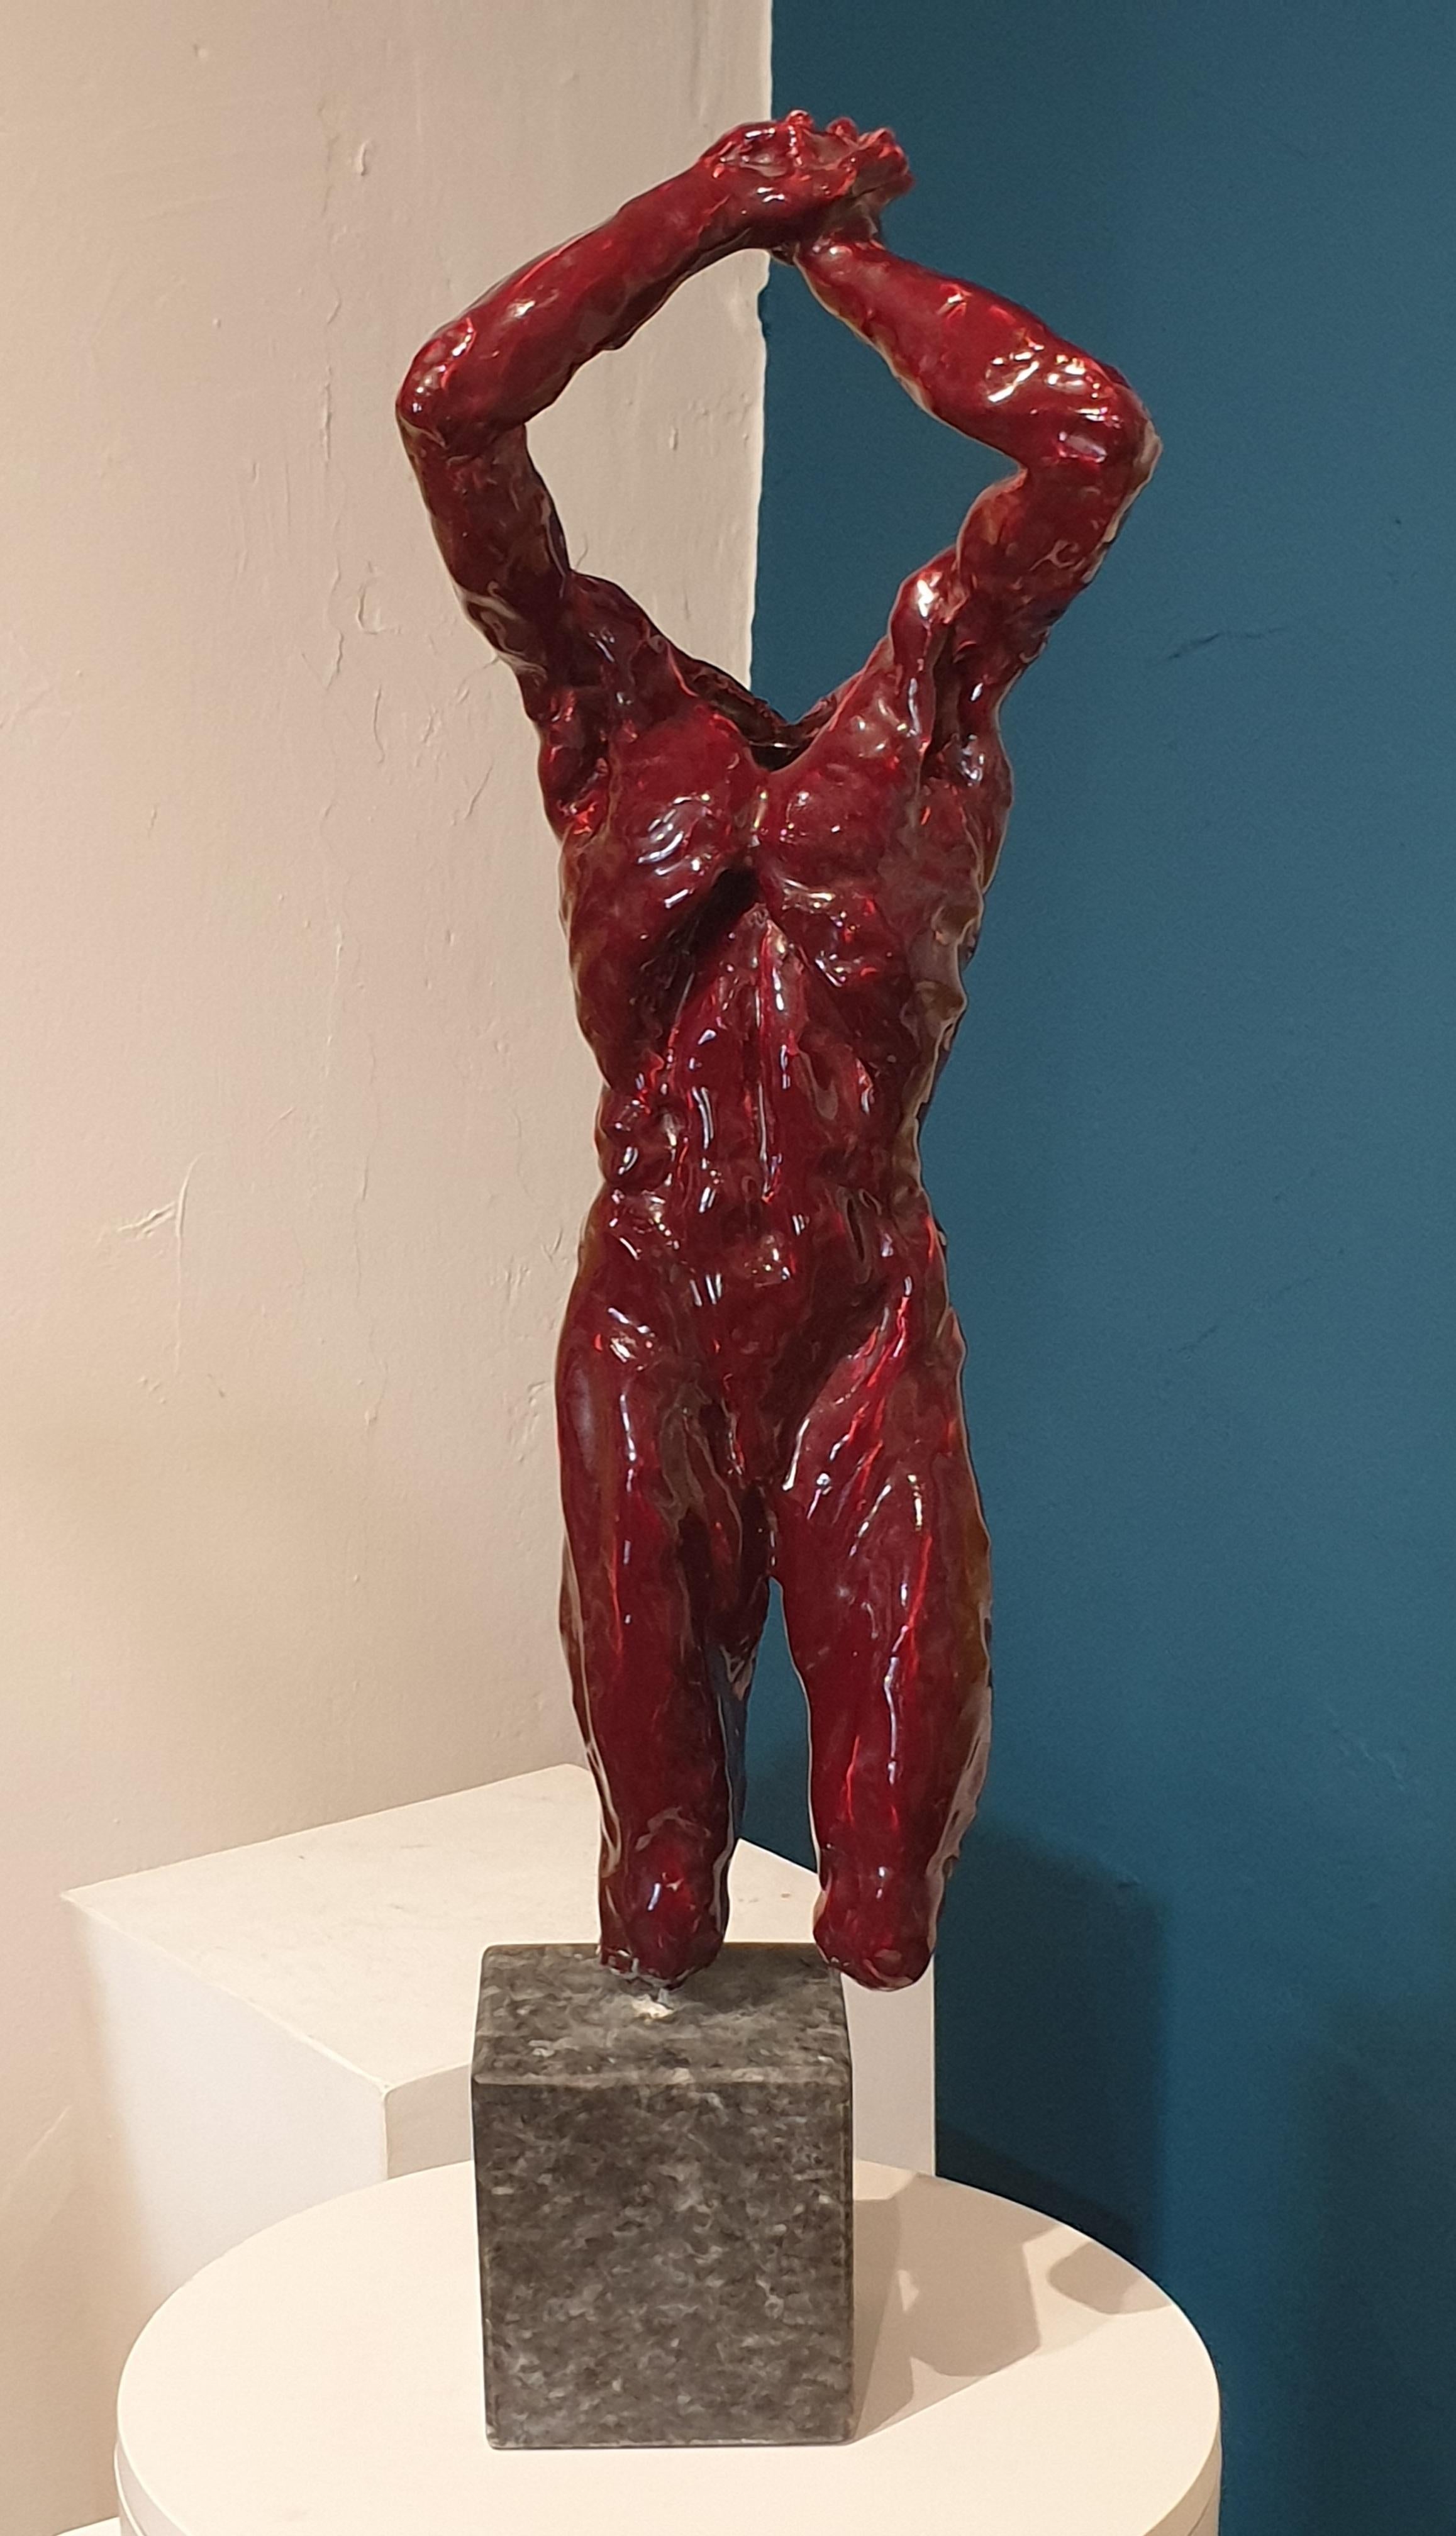 Nude männliche Acephale Sang de Boeuf-Keramik-Skulptur mit Marmorsockel aus der Mitte des Jahrhunderts. – Sculpture von Franta (Frantisek Merte)